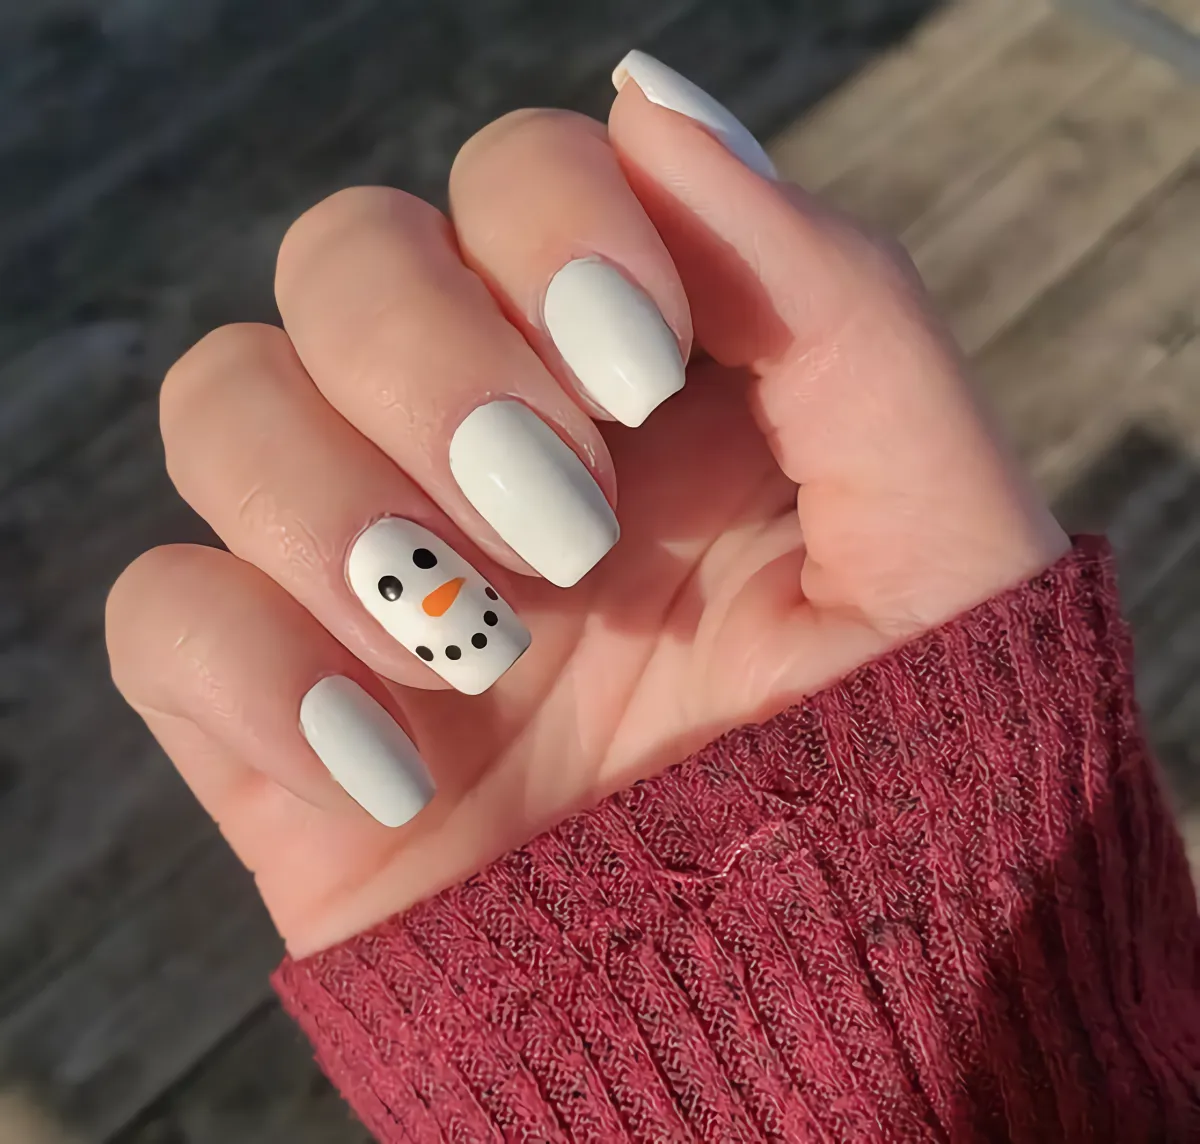 ongles blancs avec un bonhomme de neige minimaliste sur un des ongles